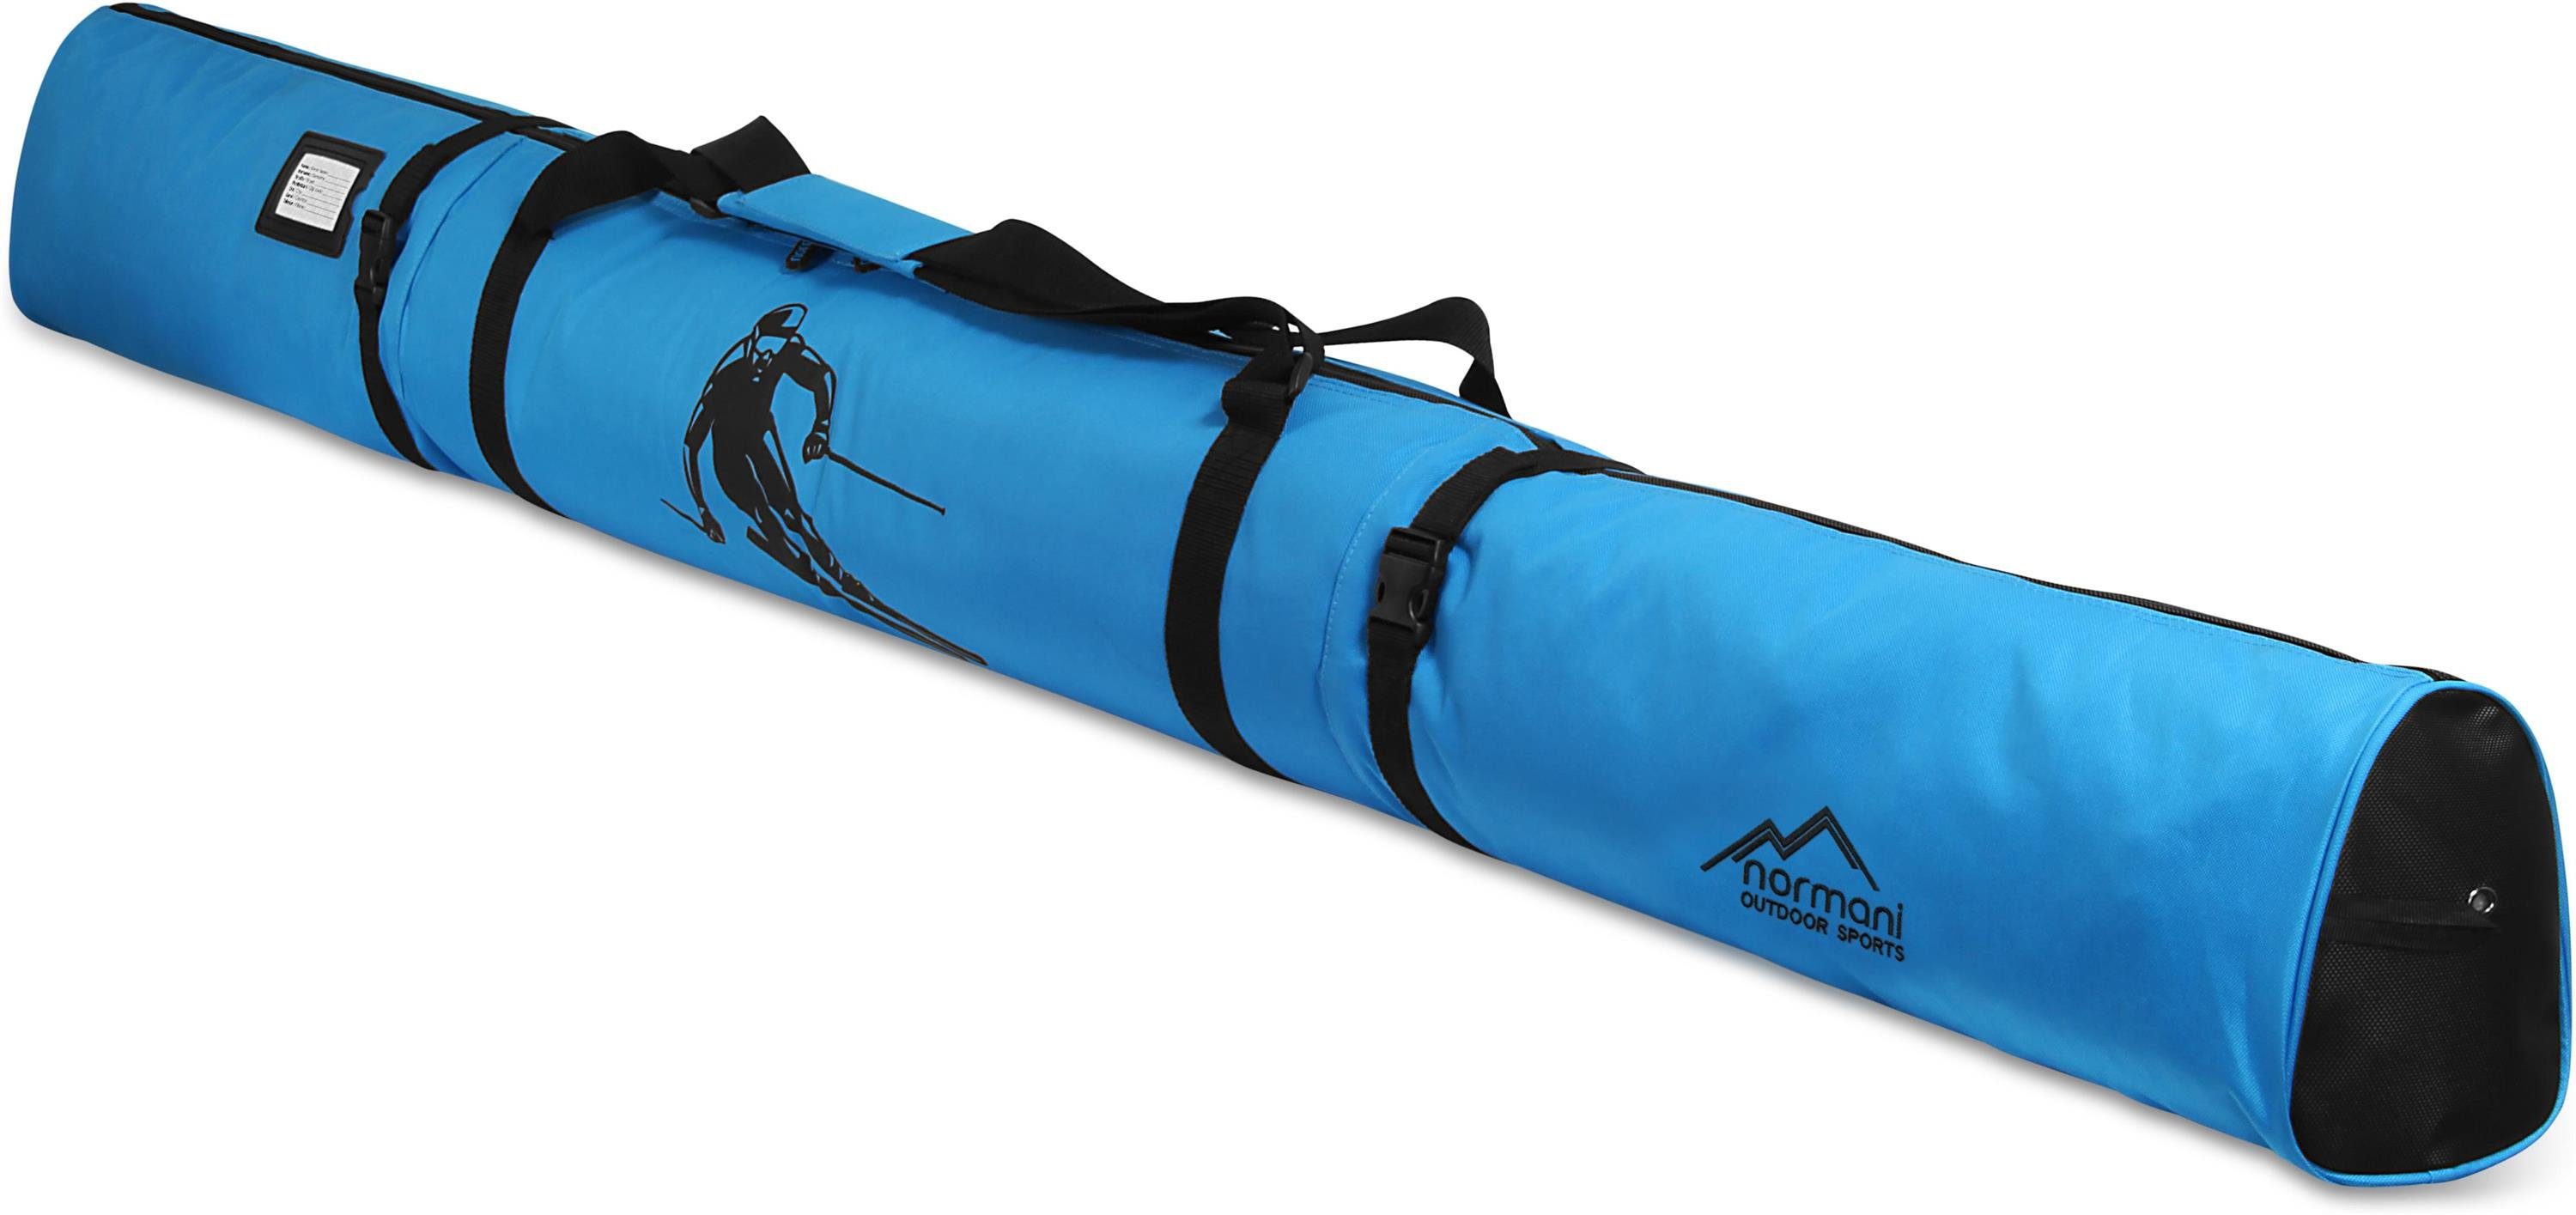 normani Sporttasche Skitasche 170, Blau Transporttasche für Skier Alpine Skistöcke Skitasche Aufbewahrungstasche Run und Skihülle